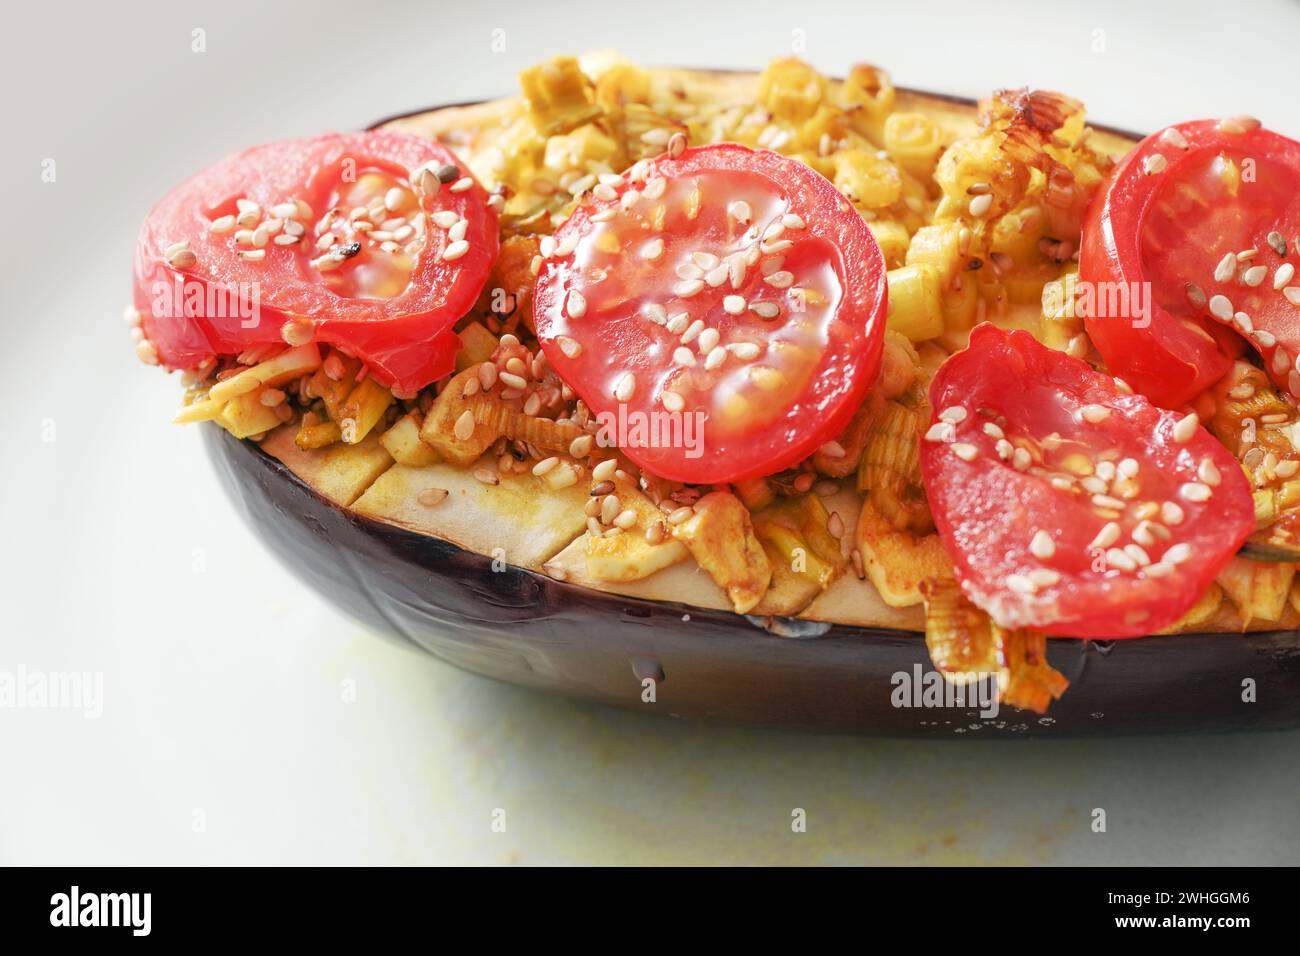 Auberginen aus dem Ofen mit Platz, Zwiebeln, Tomaten und Sesamsamen, gesunde vegetarische Low Carb Mahlzeit, ausgewählter Fokus Stockfoto